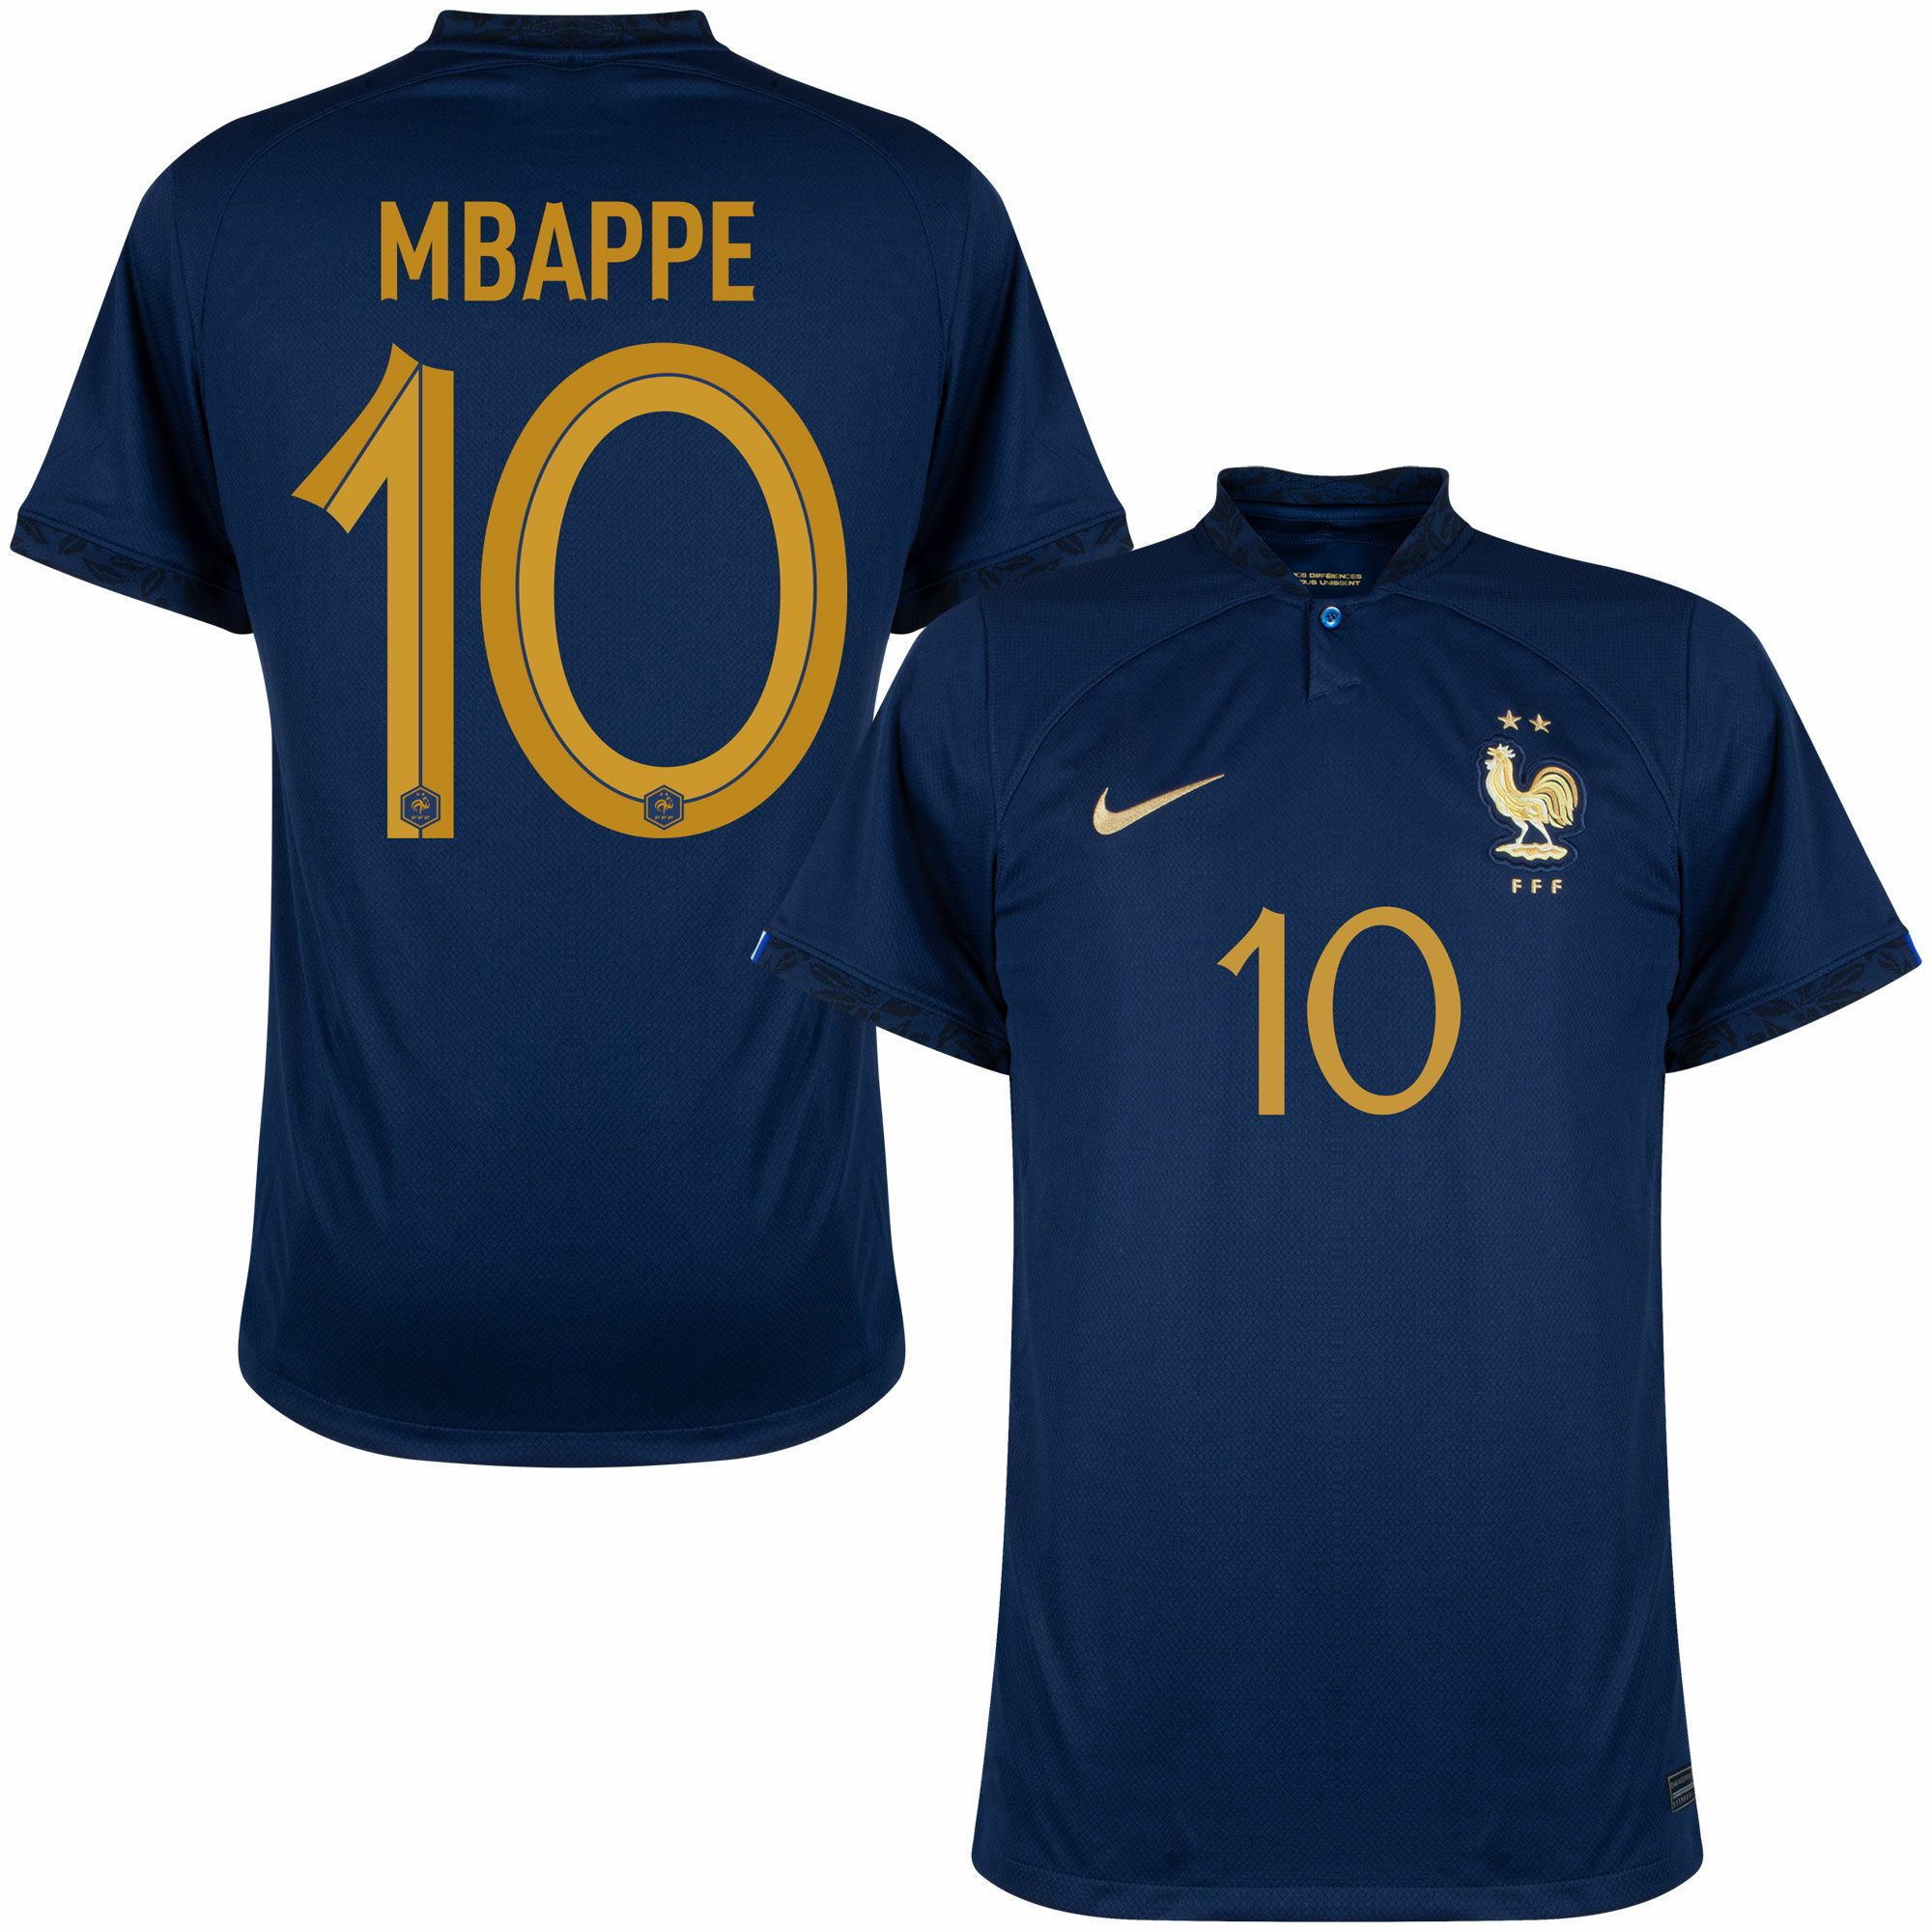 Francie - Dres fotbalový - oficiální potisk, Kylian Mbappé, číslo 10, domácí, sezóna 2022/23, modrý